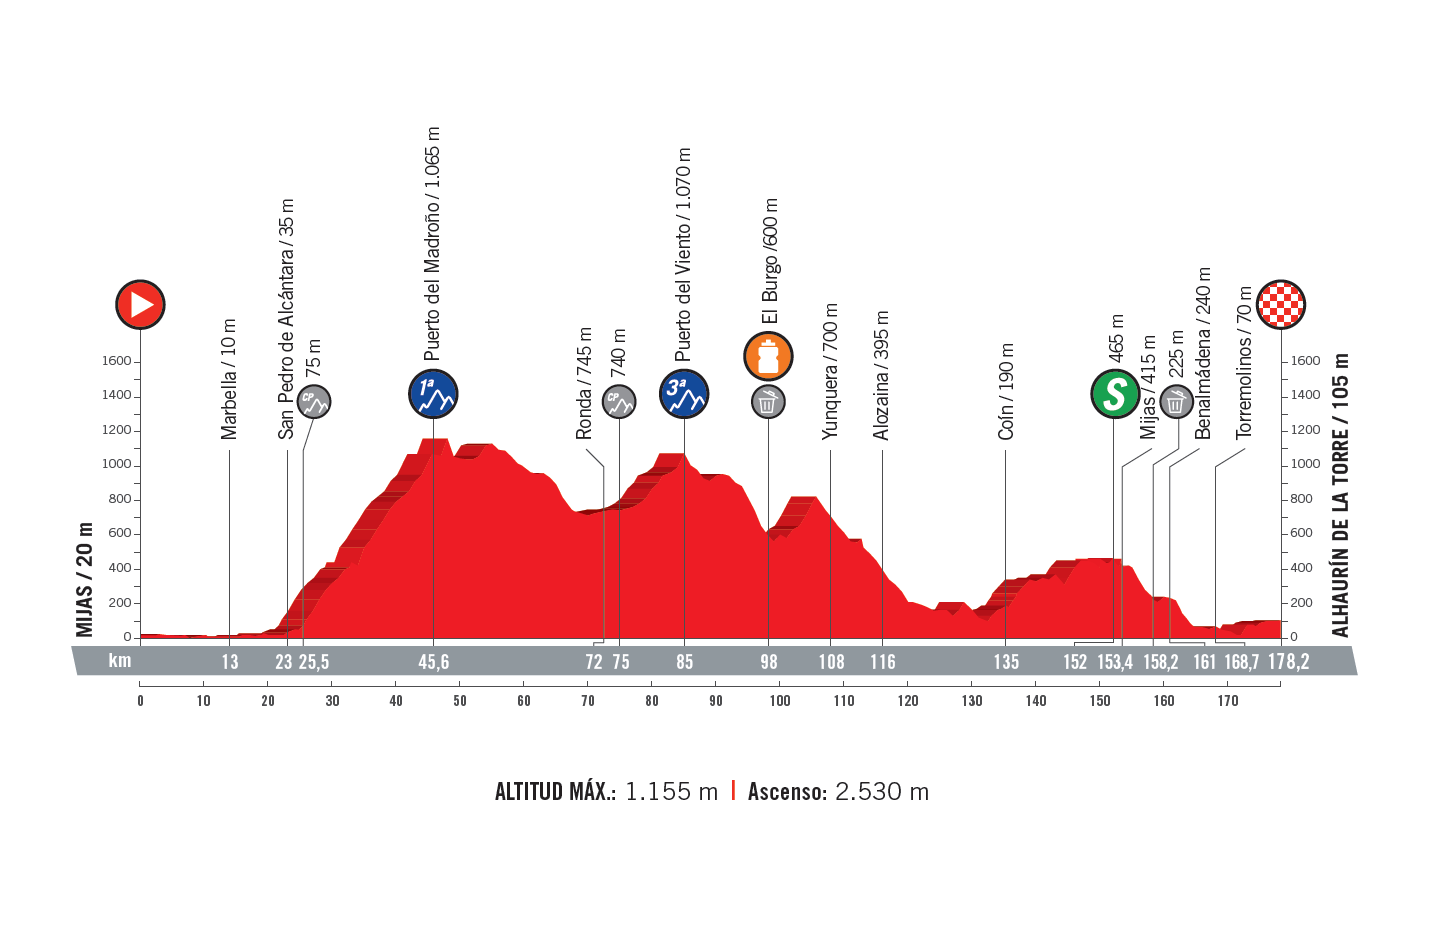 profil 3. etapu Vuelta a Espana 2018